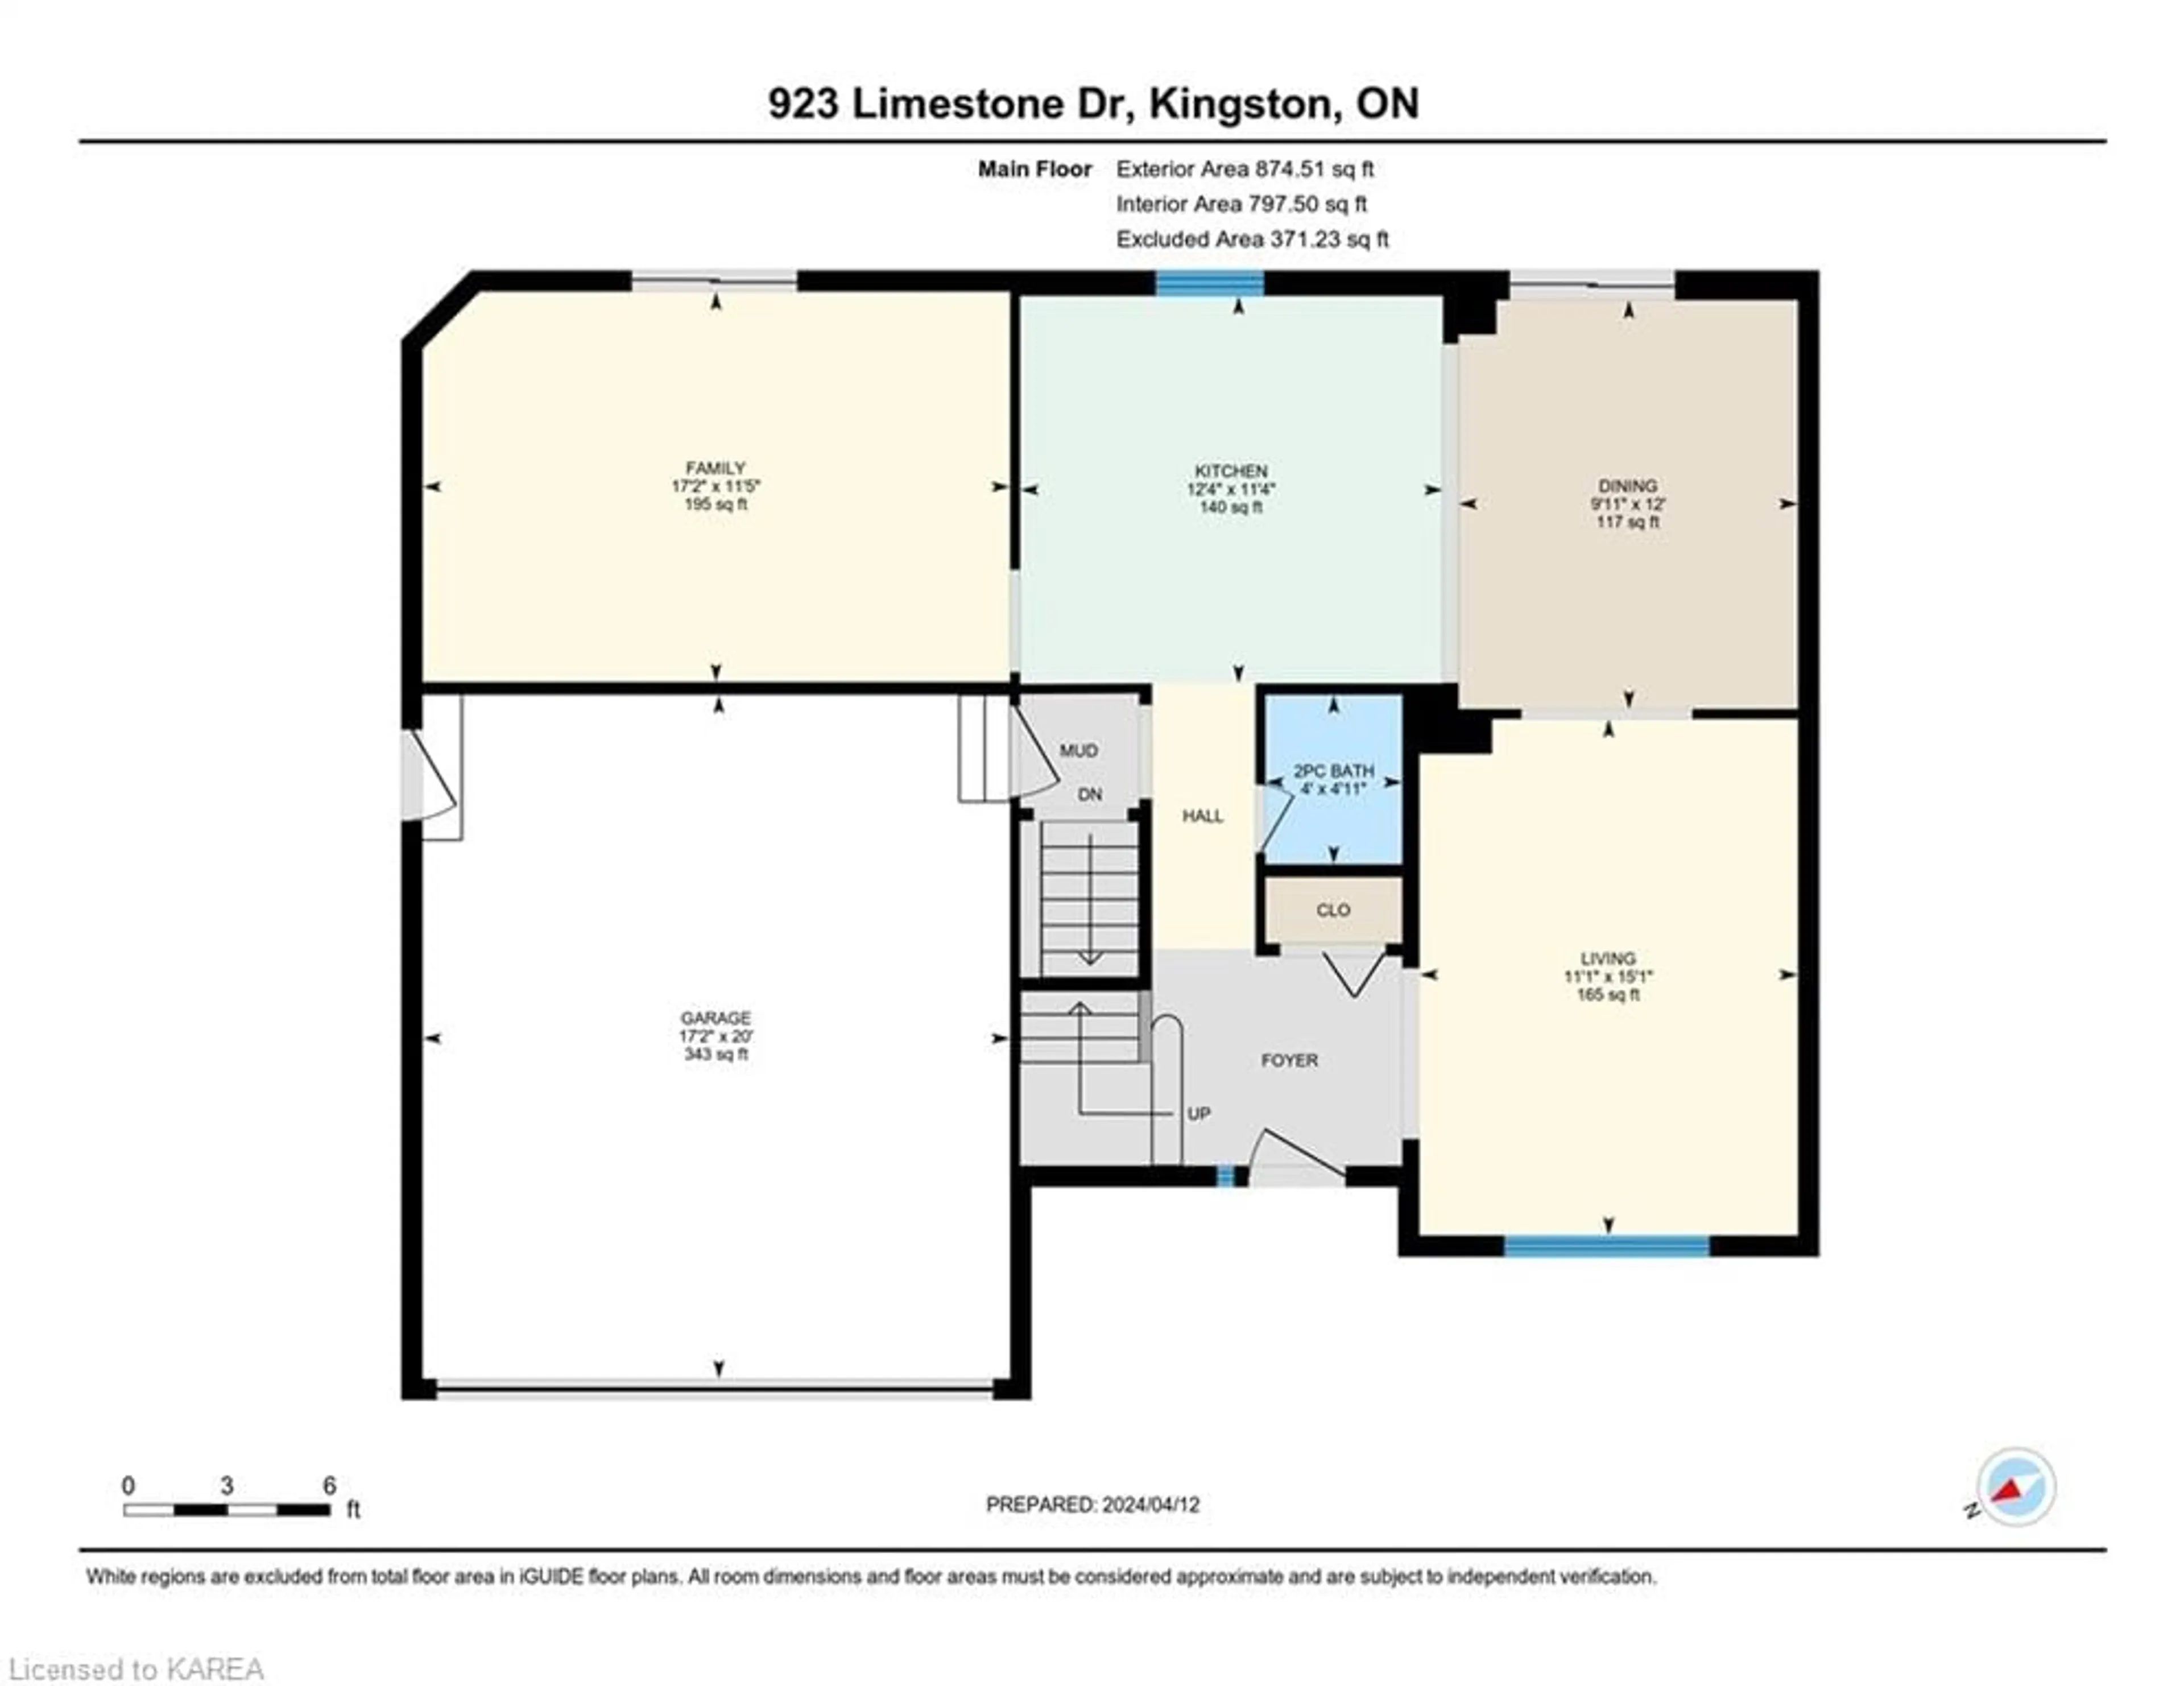 Floor plan for 923 Limestone Dr, Kingston Ontario K7P 2R7